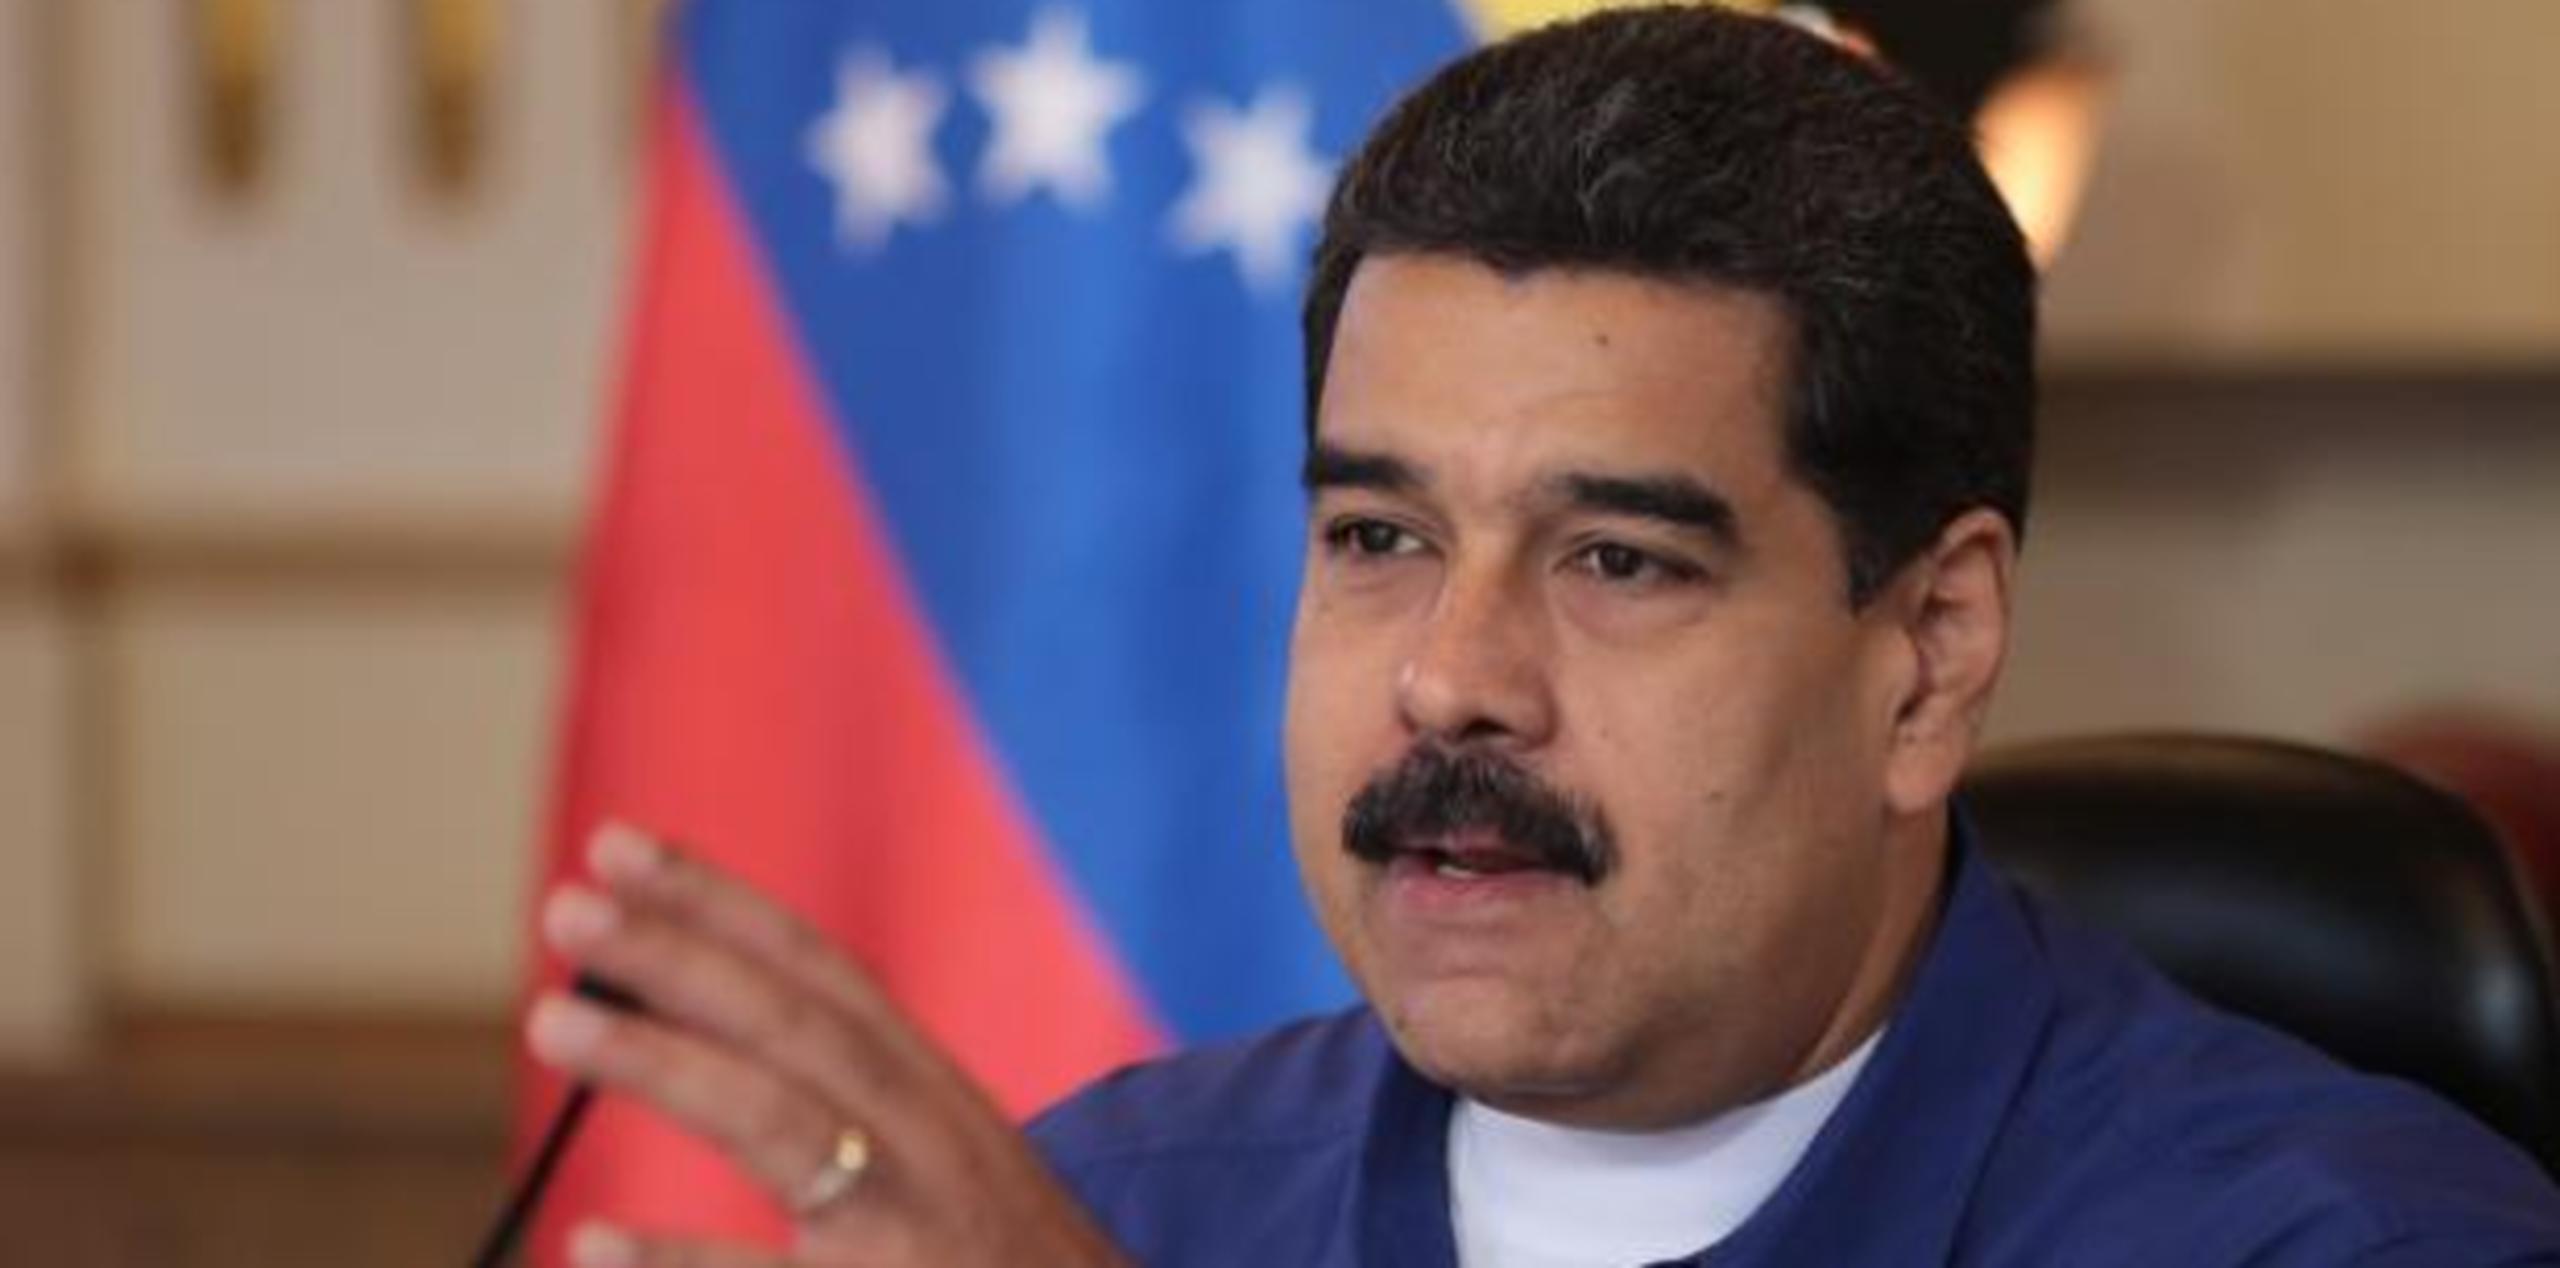 Maduro no precisó en qué consistirá la ayuda del gobierno venezolano a la Isla. (Archivo)

